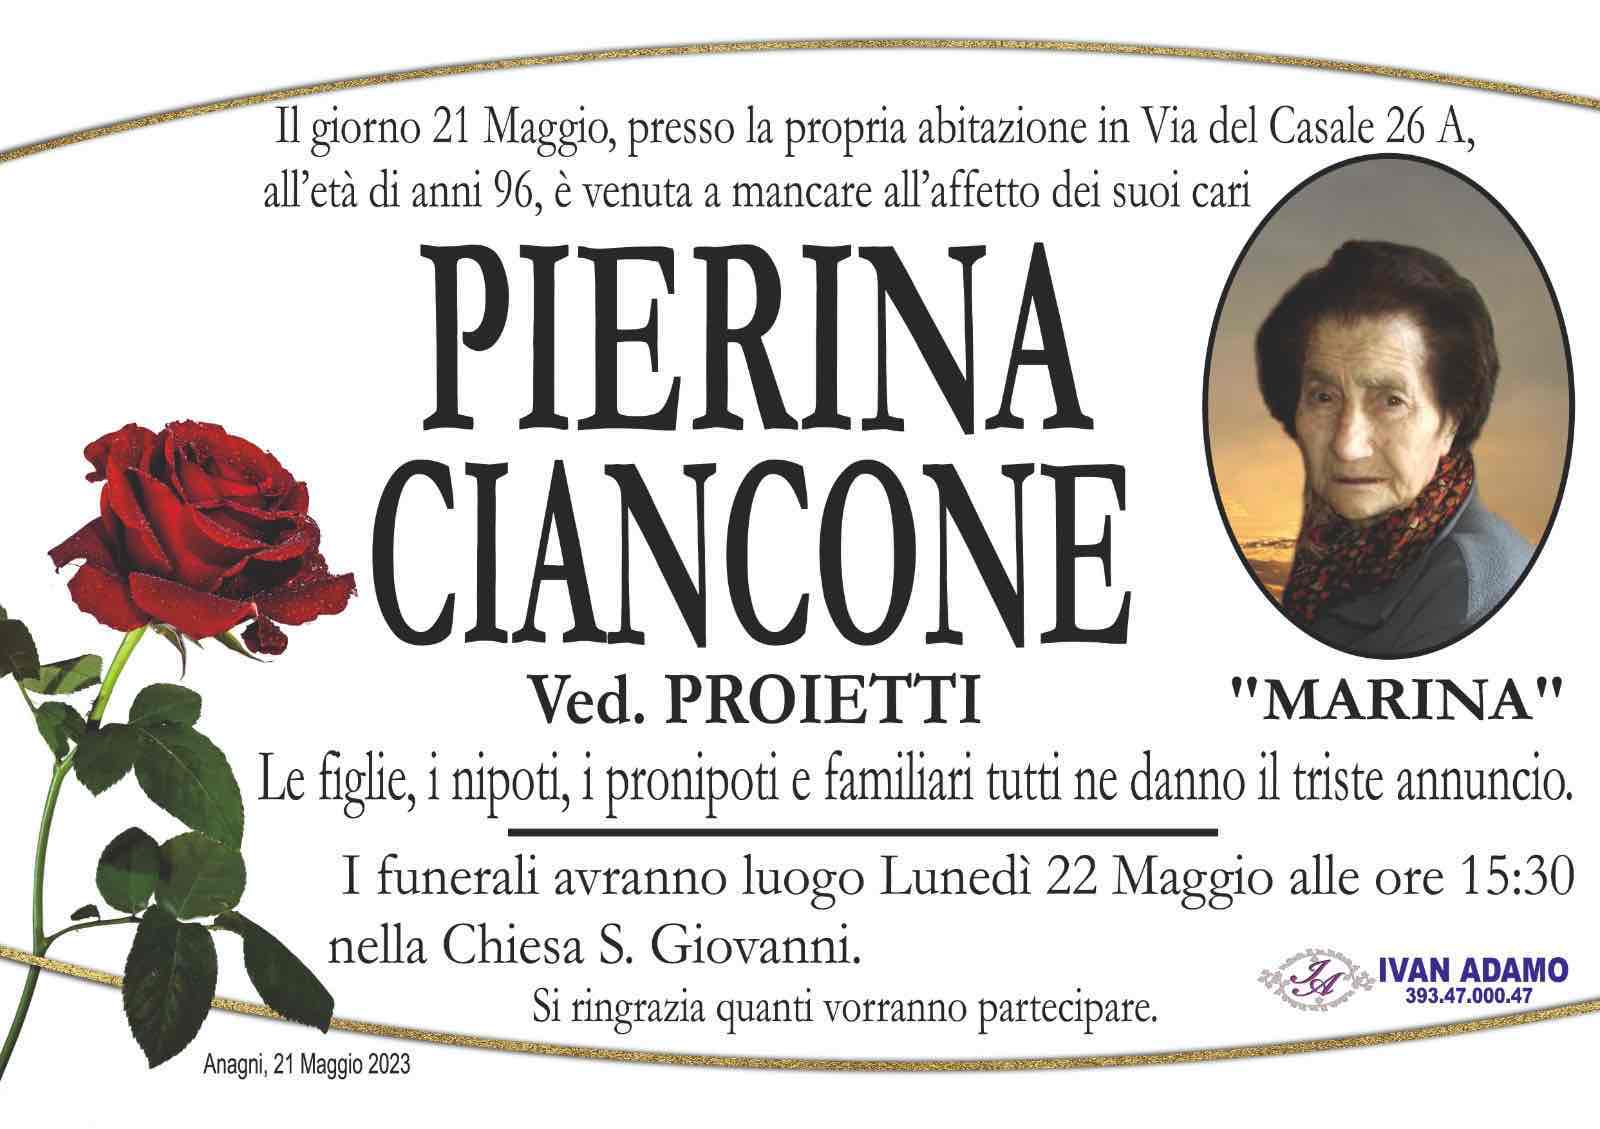 Pierina Ciancone  “Marina”